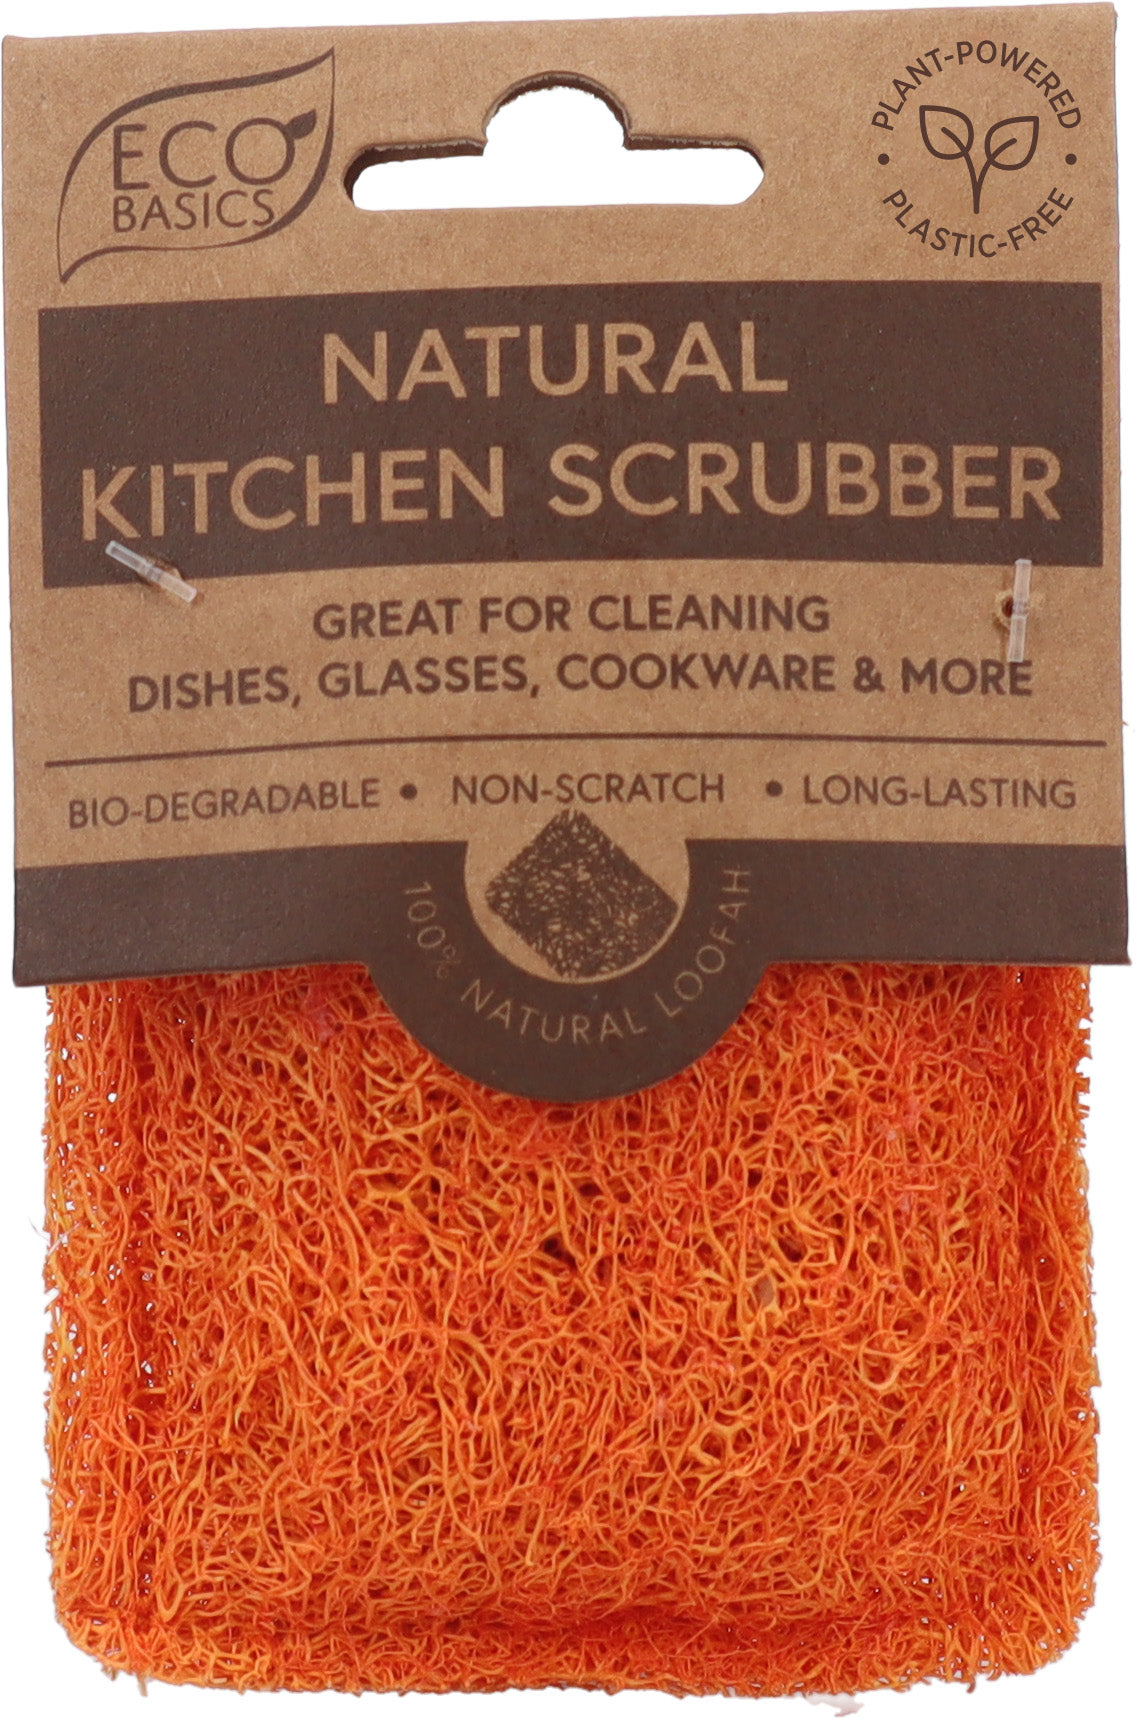 Eco Basics Natural Kitchen Scrubber